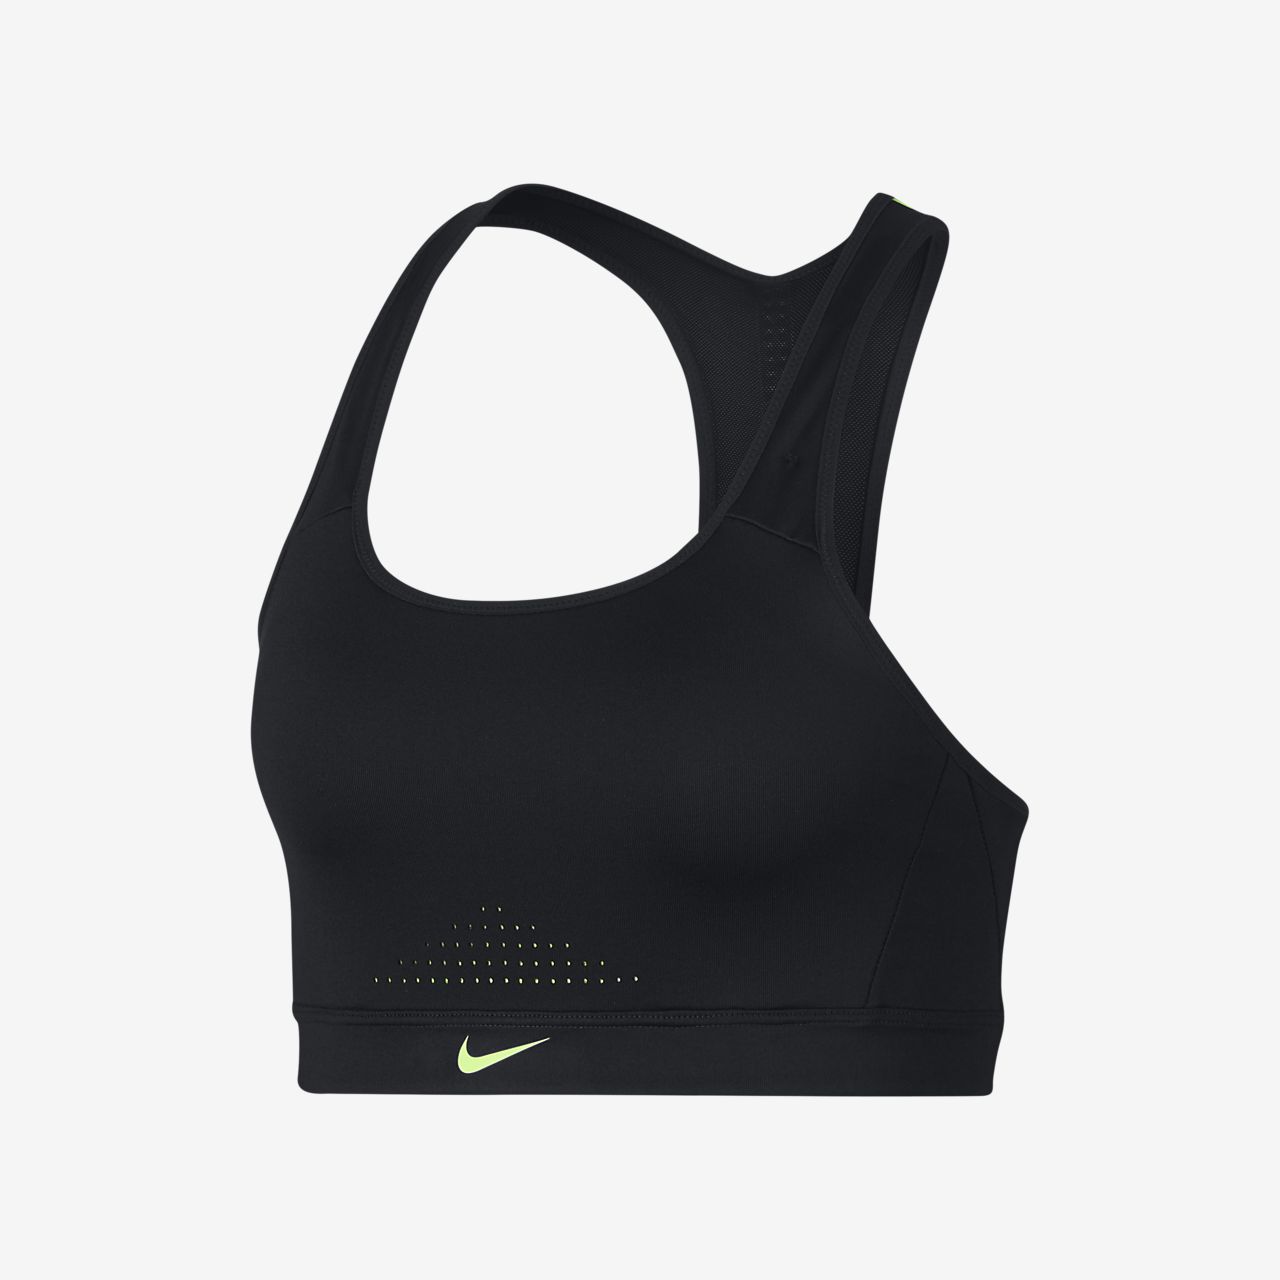 Nike Pro Classic Sports Bra Size Chart